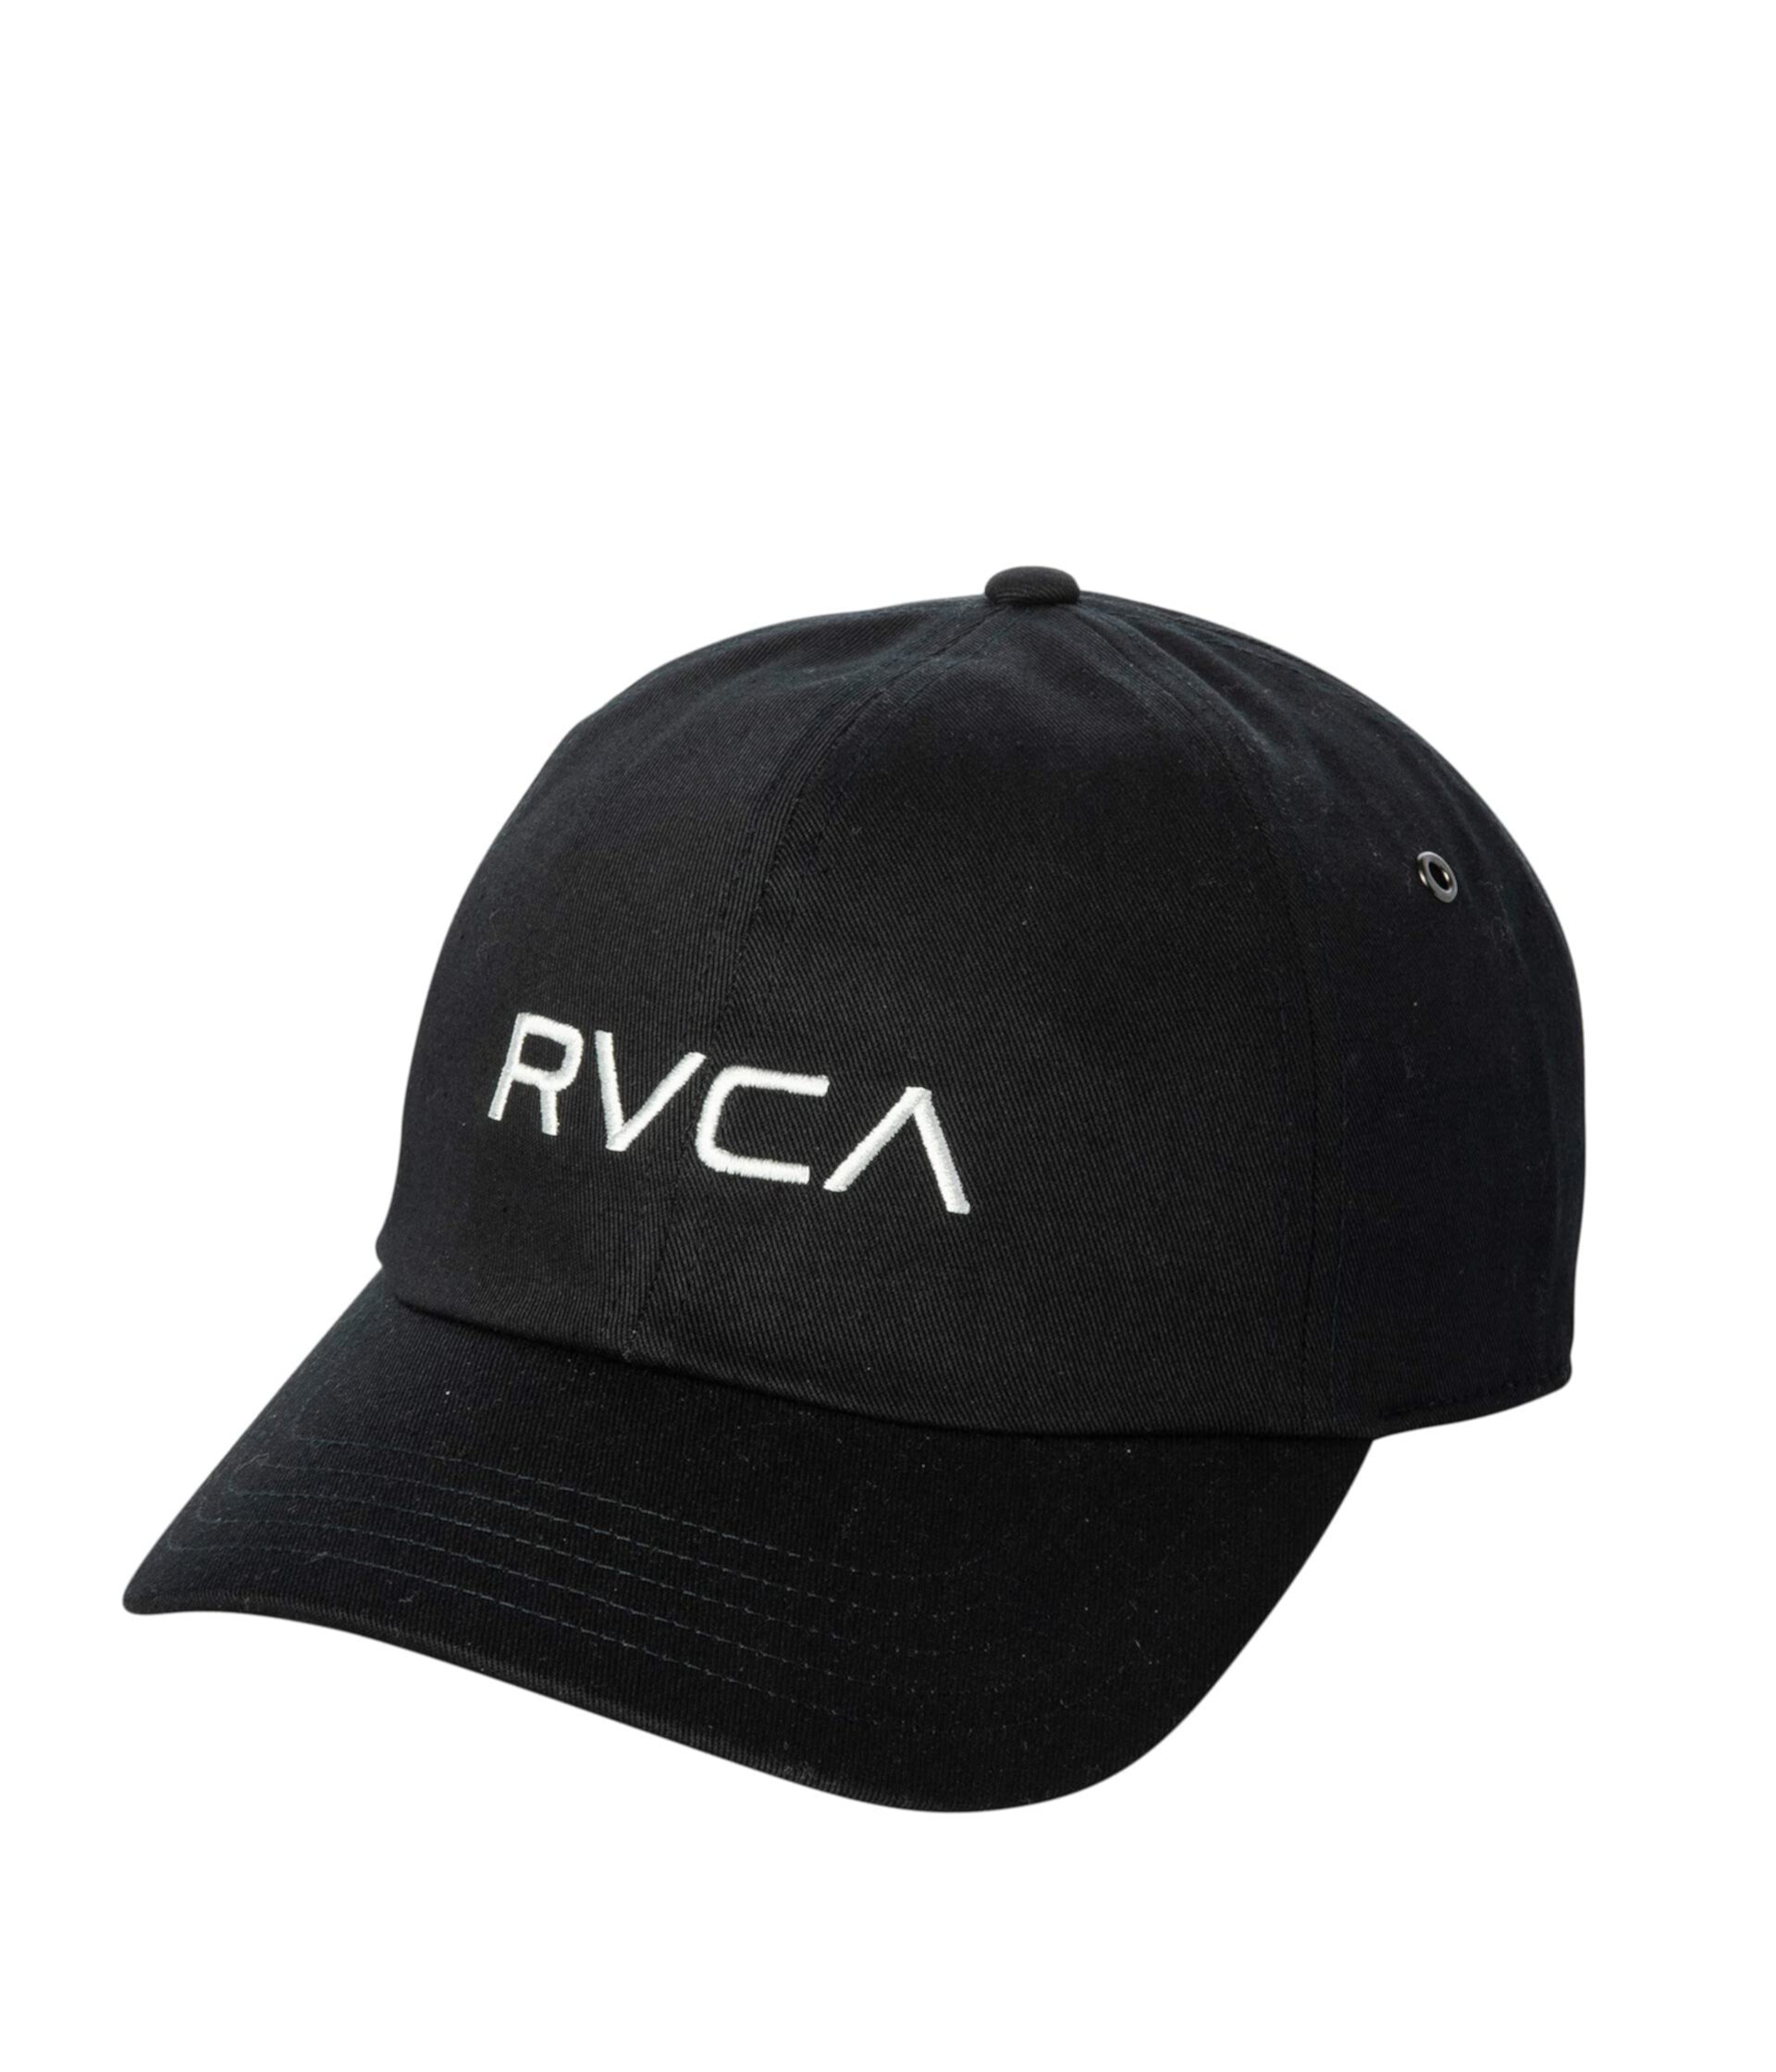 Папа шляпа RVCA